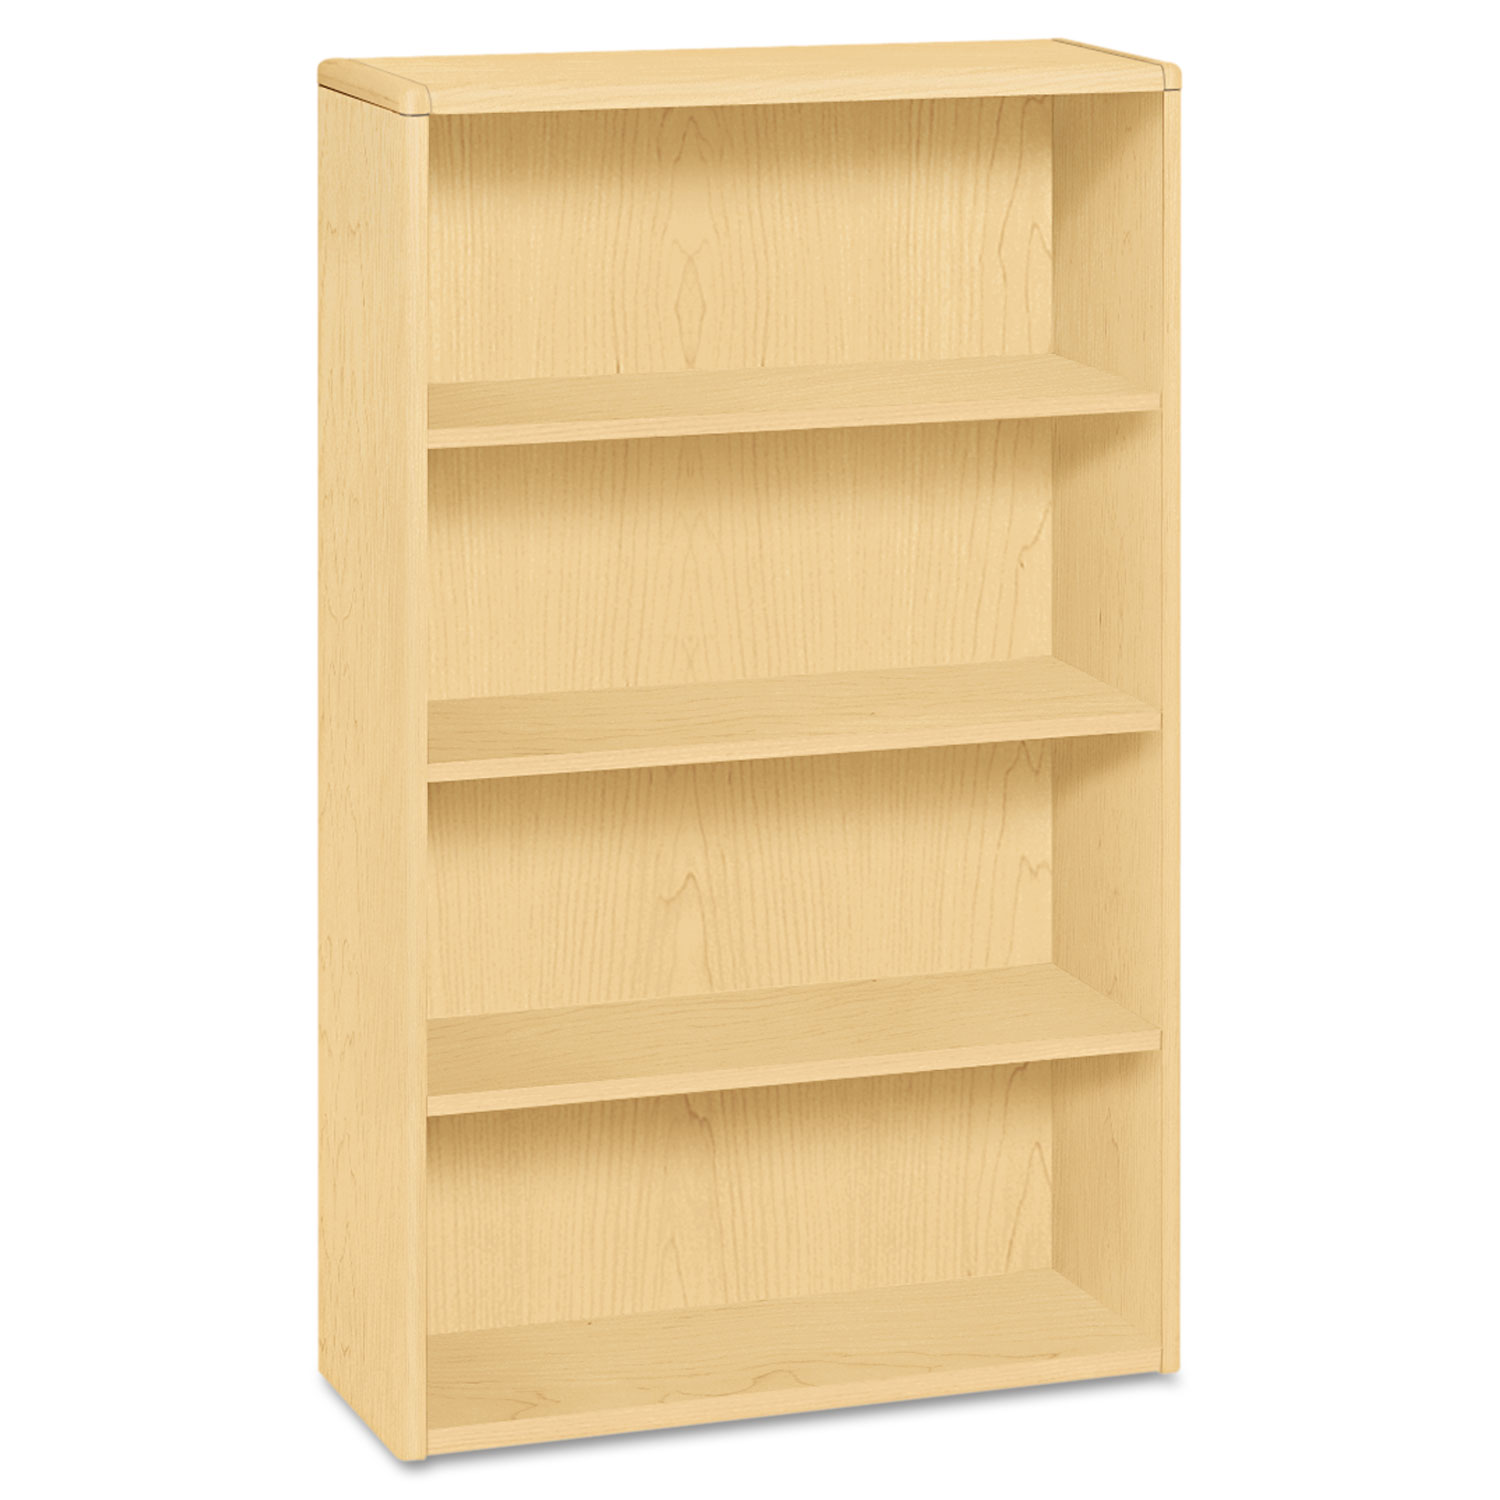  HON H10754.DD 10700 Series Wood Bookcase, Four Shelf, 36w x 13 1/8d x 57 1/8h, Natural Maple (HON10754DD) 